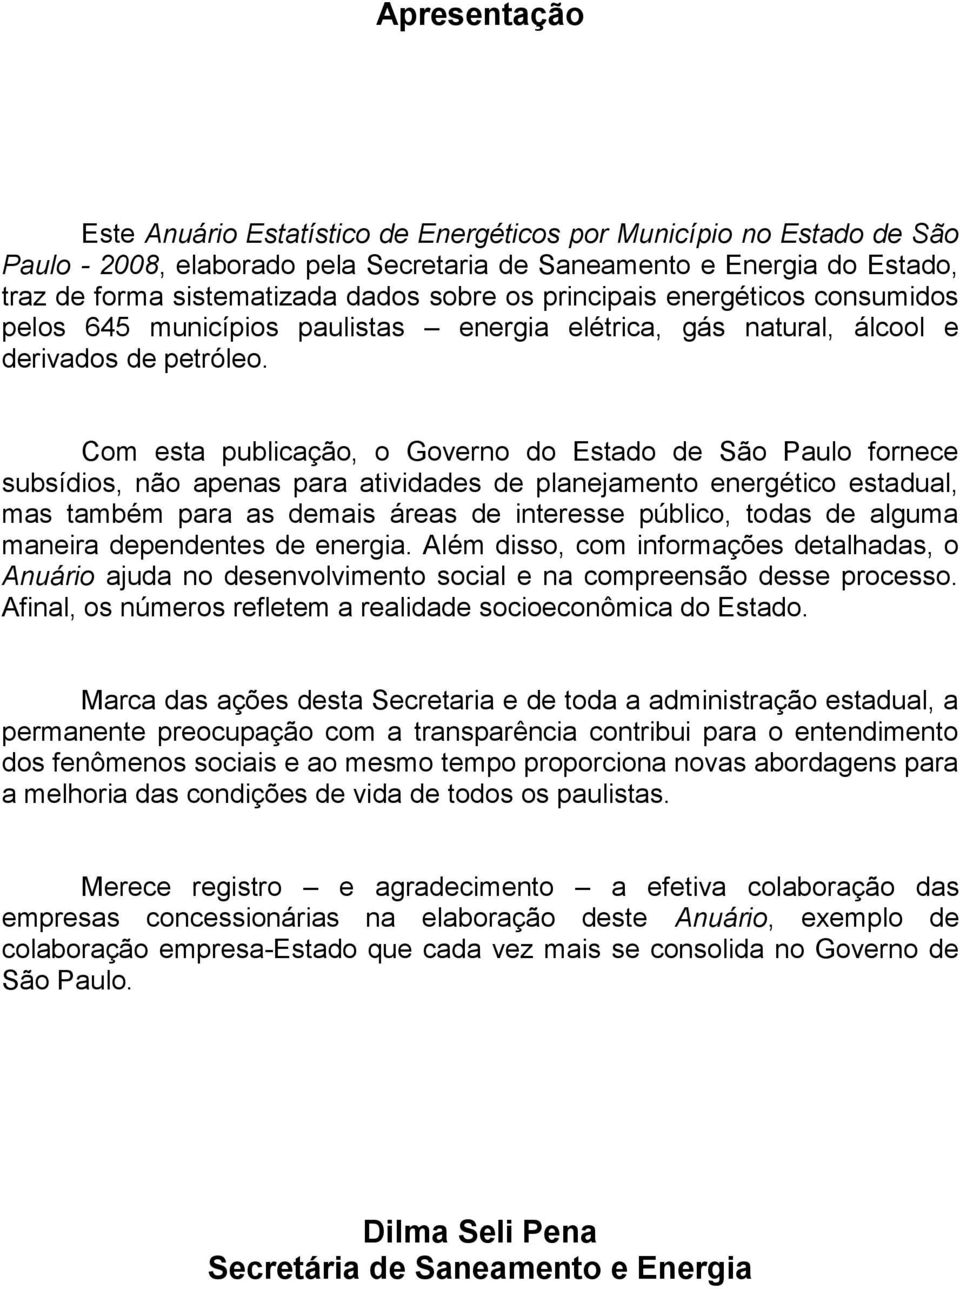 Com esta publicação, o Governo do Estado de São Paulo fornece subsídios, não apenas para atividades de planejamento energético estadual, mas também para as demais áreas de interesse público, todas de